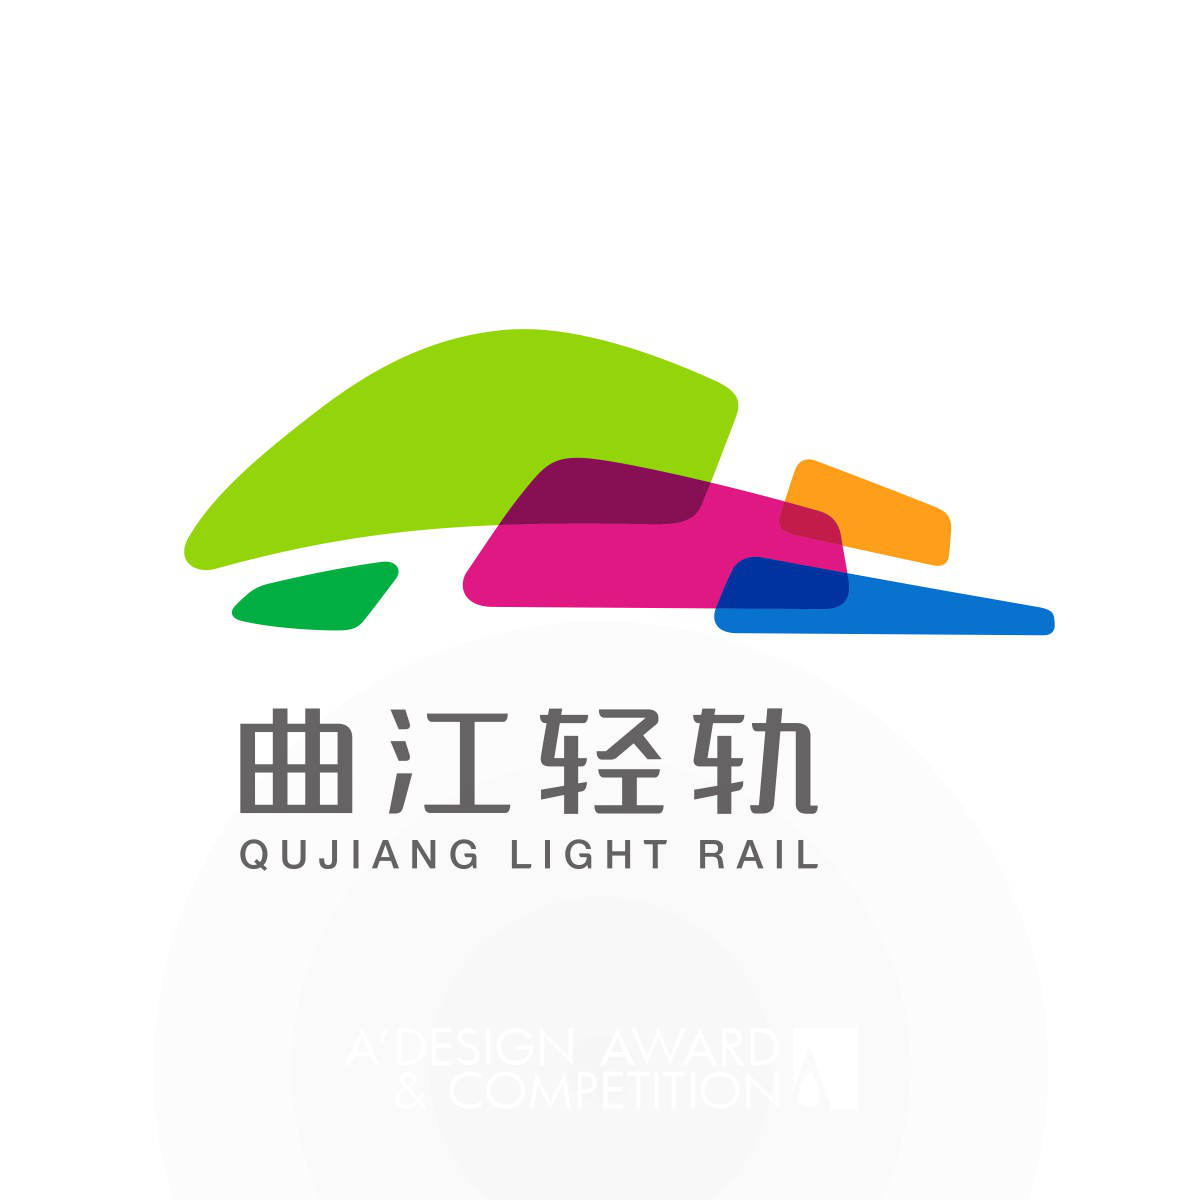 Qujiang Light Rail Brand Design